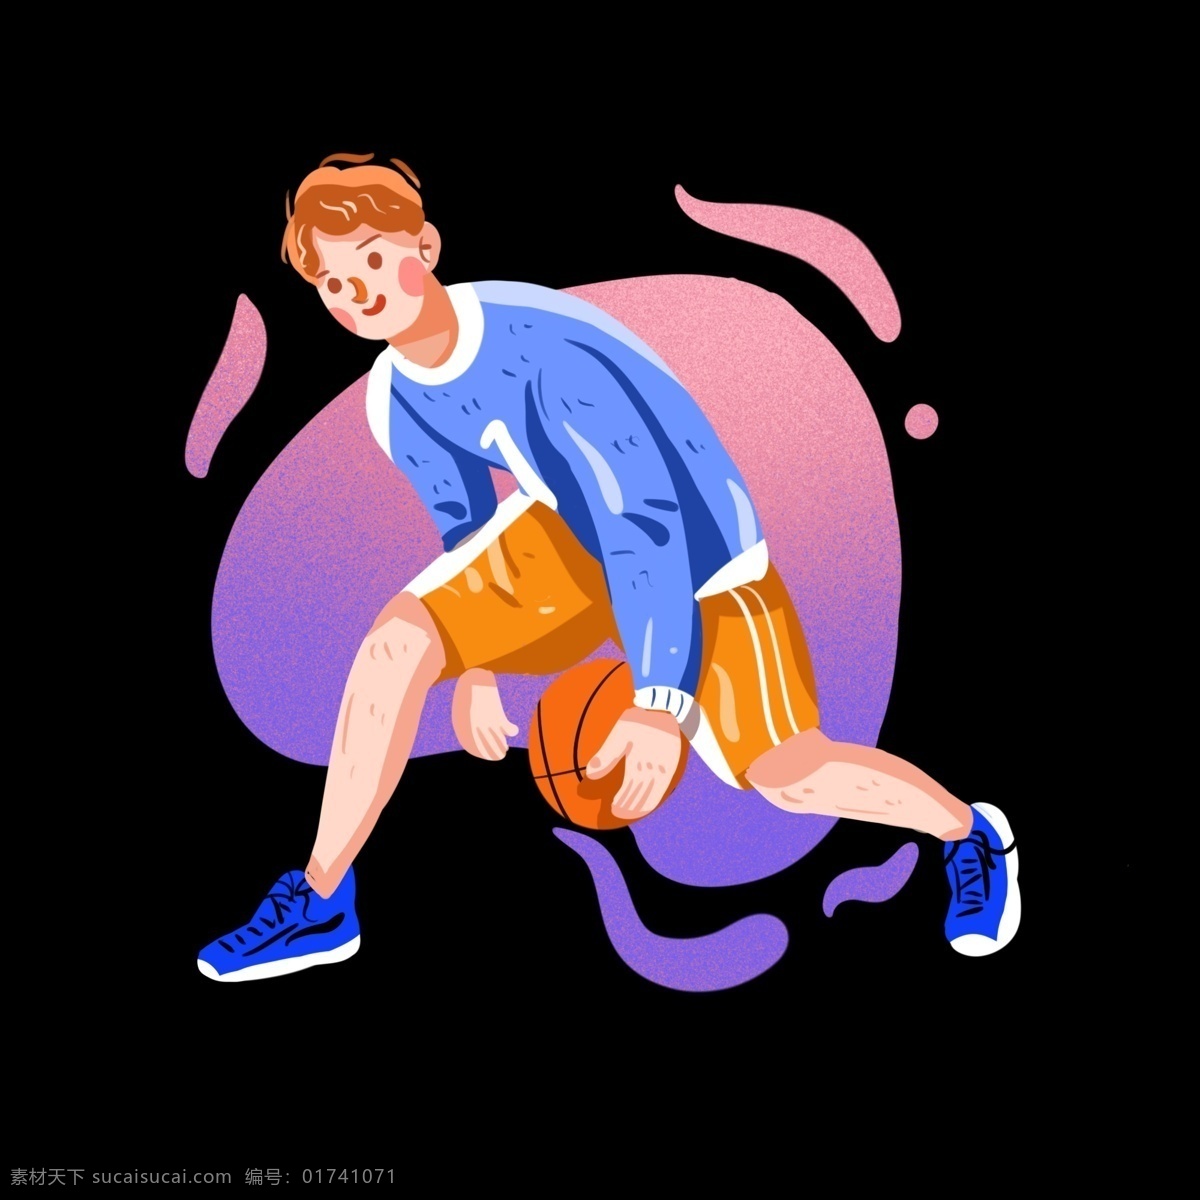 练习 篮球 男孩 手绘 插画 免 抠 练习篮球 运动男孩 运动会比赛 篮球爱好者 banner 手绘插画 小清新插画